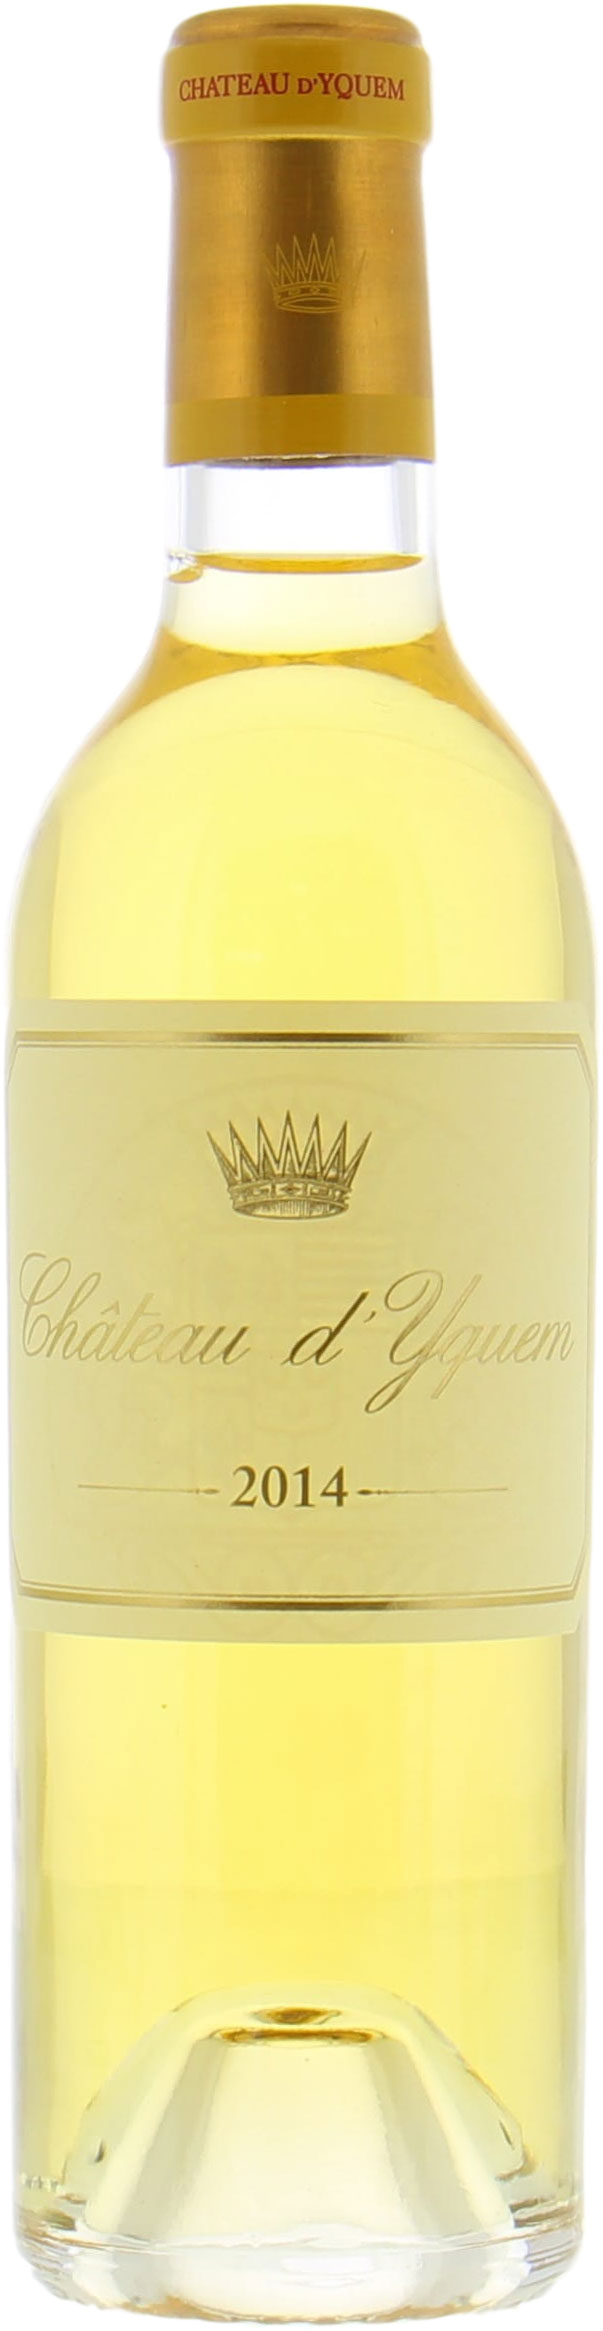 Chateau D'Yquem - Chateau D'Yquem 2014 Perfect